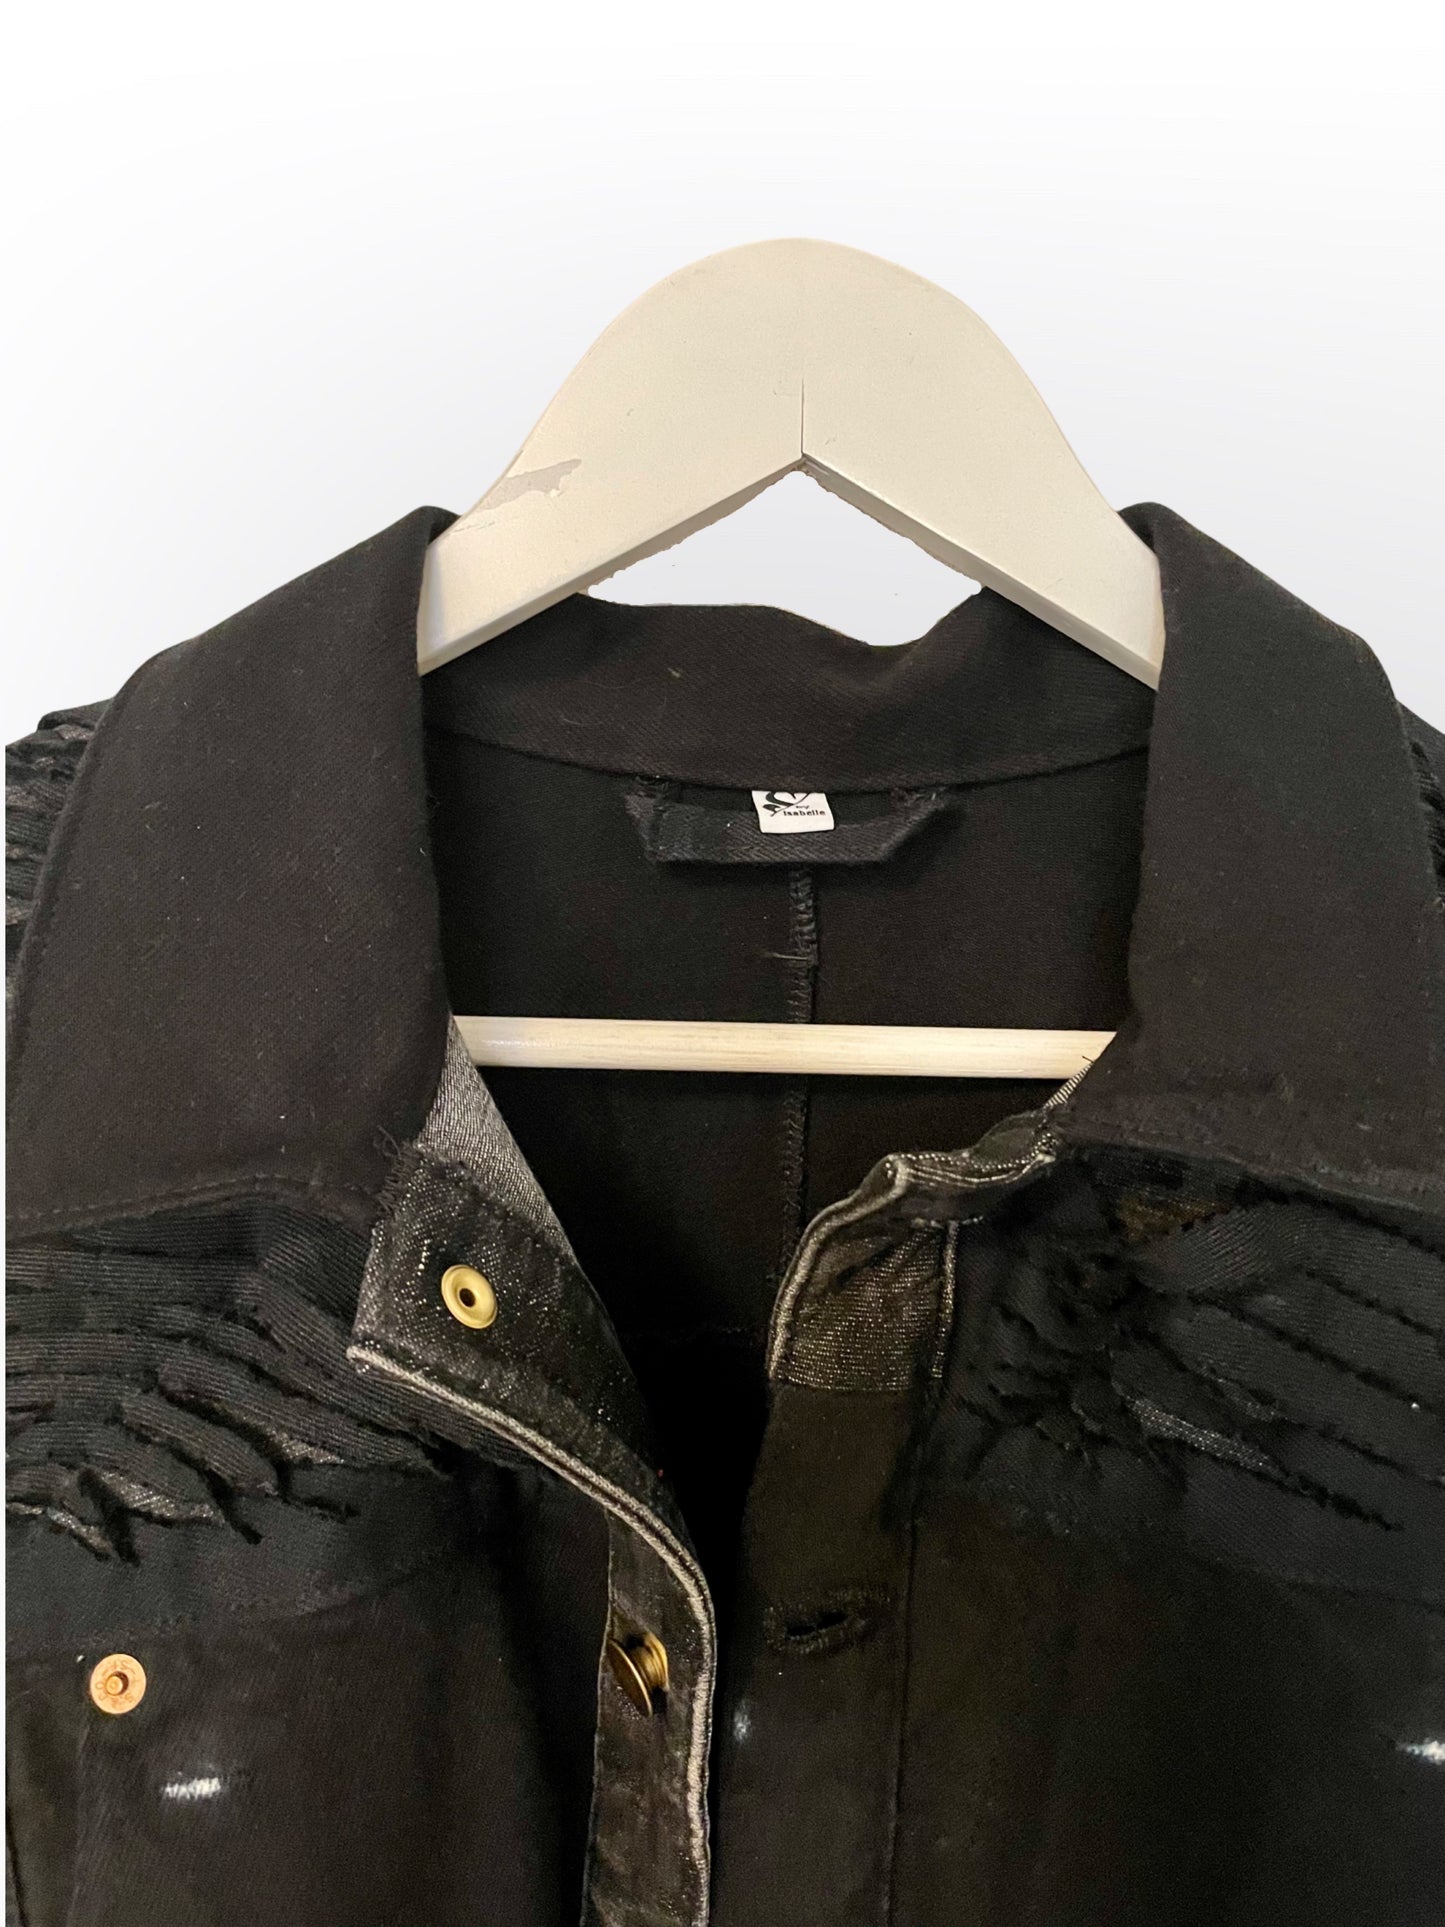 Black Upcycled denim jacket